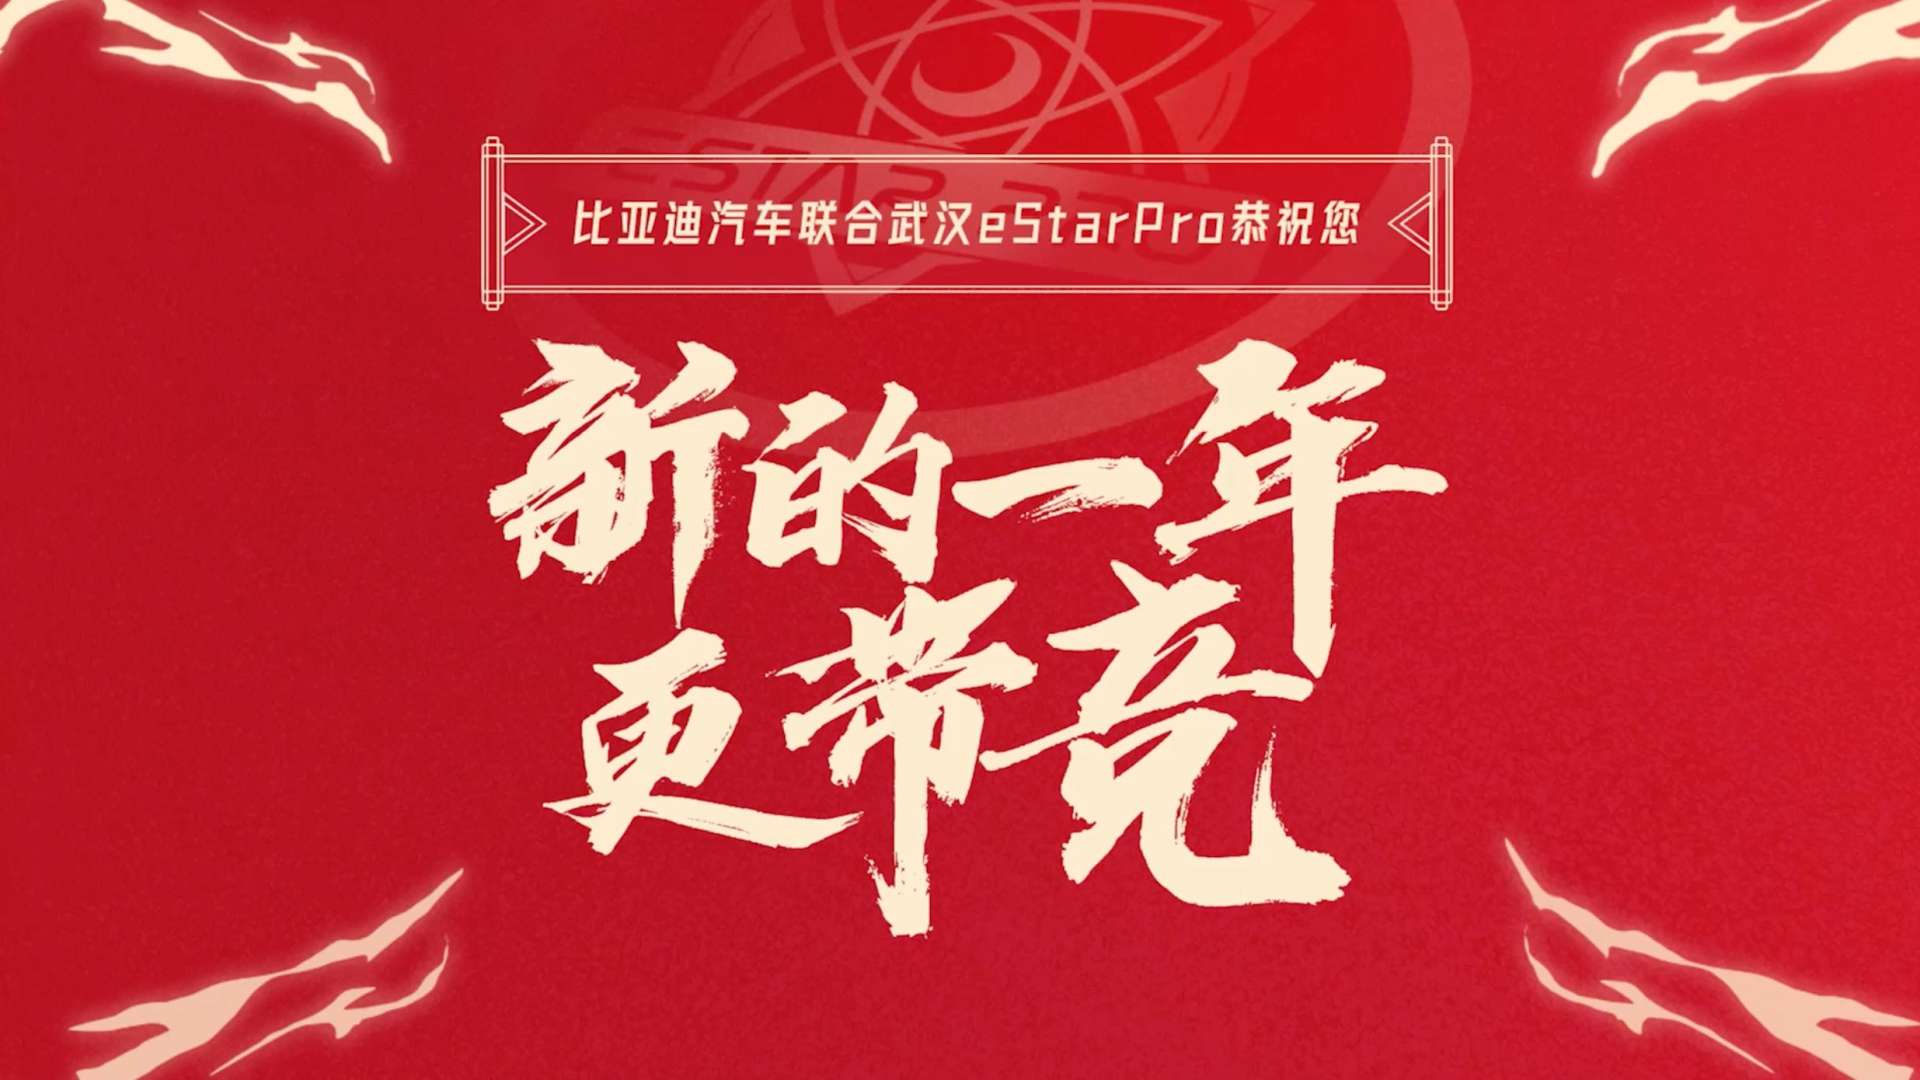 比亚迪 X eStarPro CNY 合集